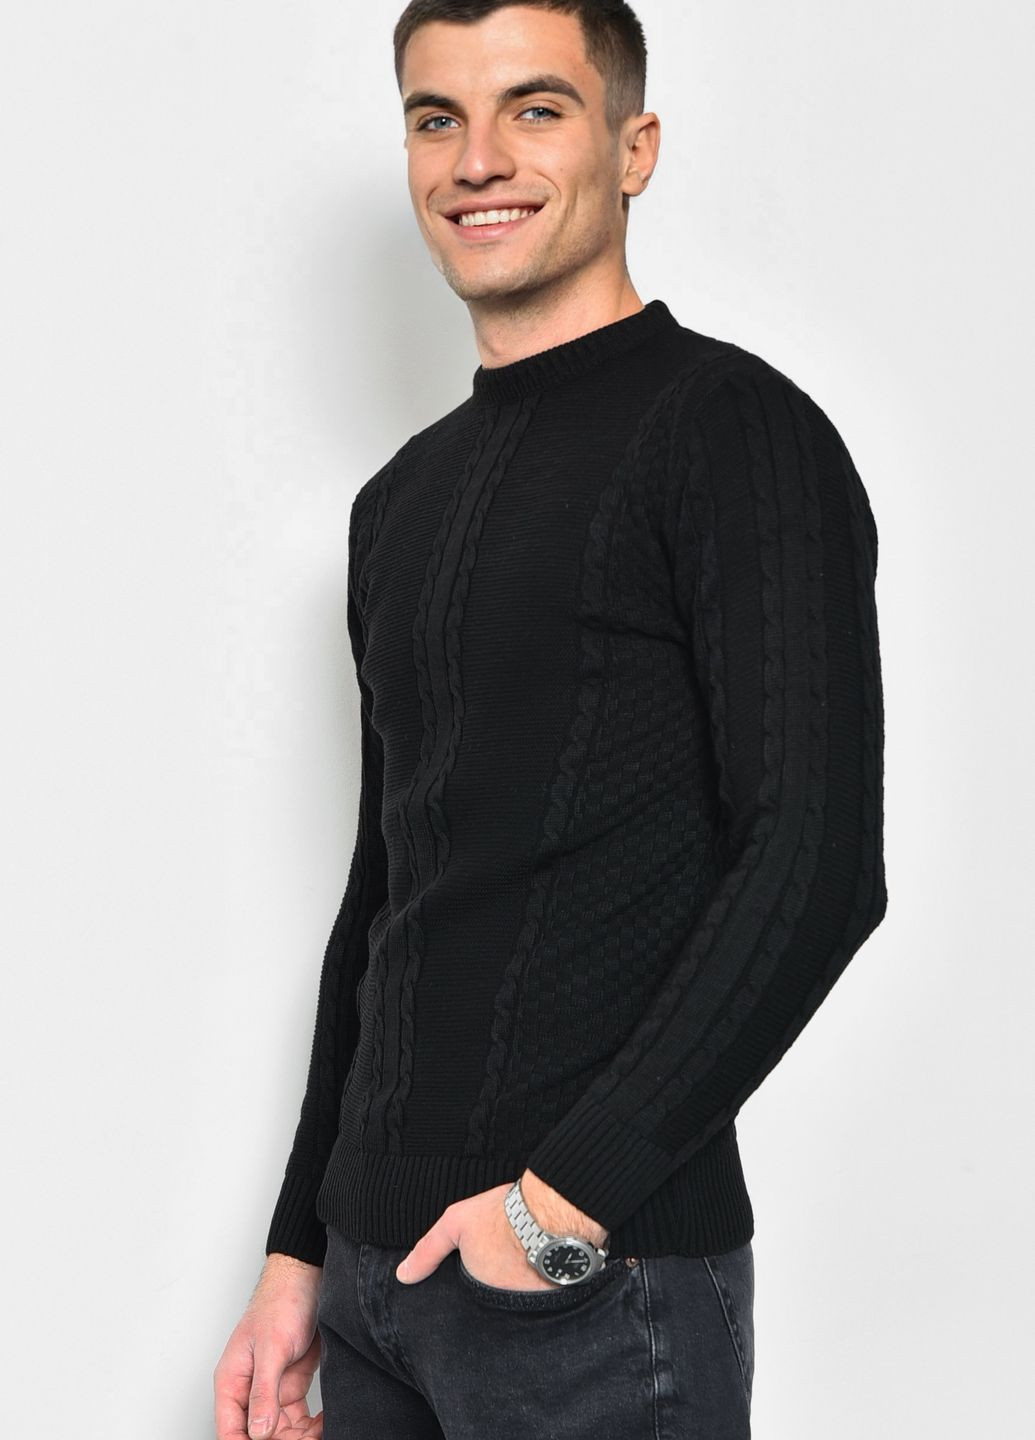 Черный демисезонный свитер мужской однотонный черного цвета пуловер Let's Shop